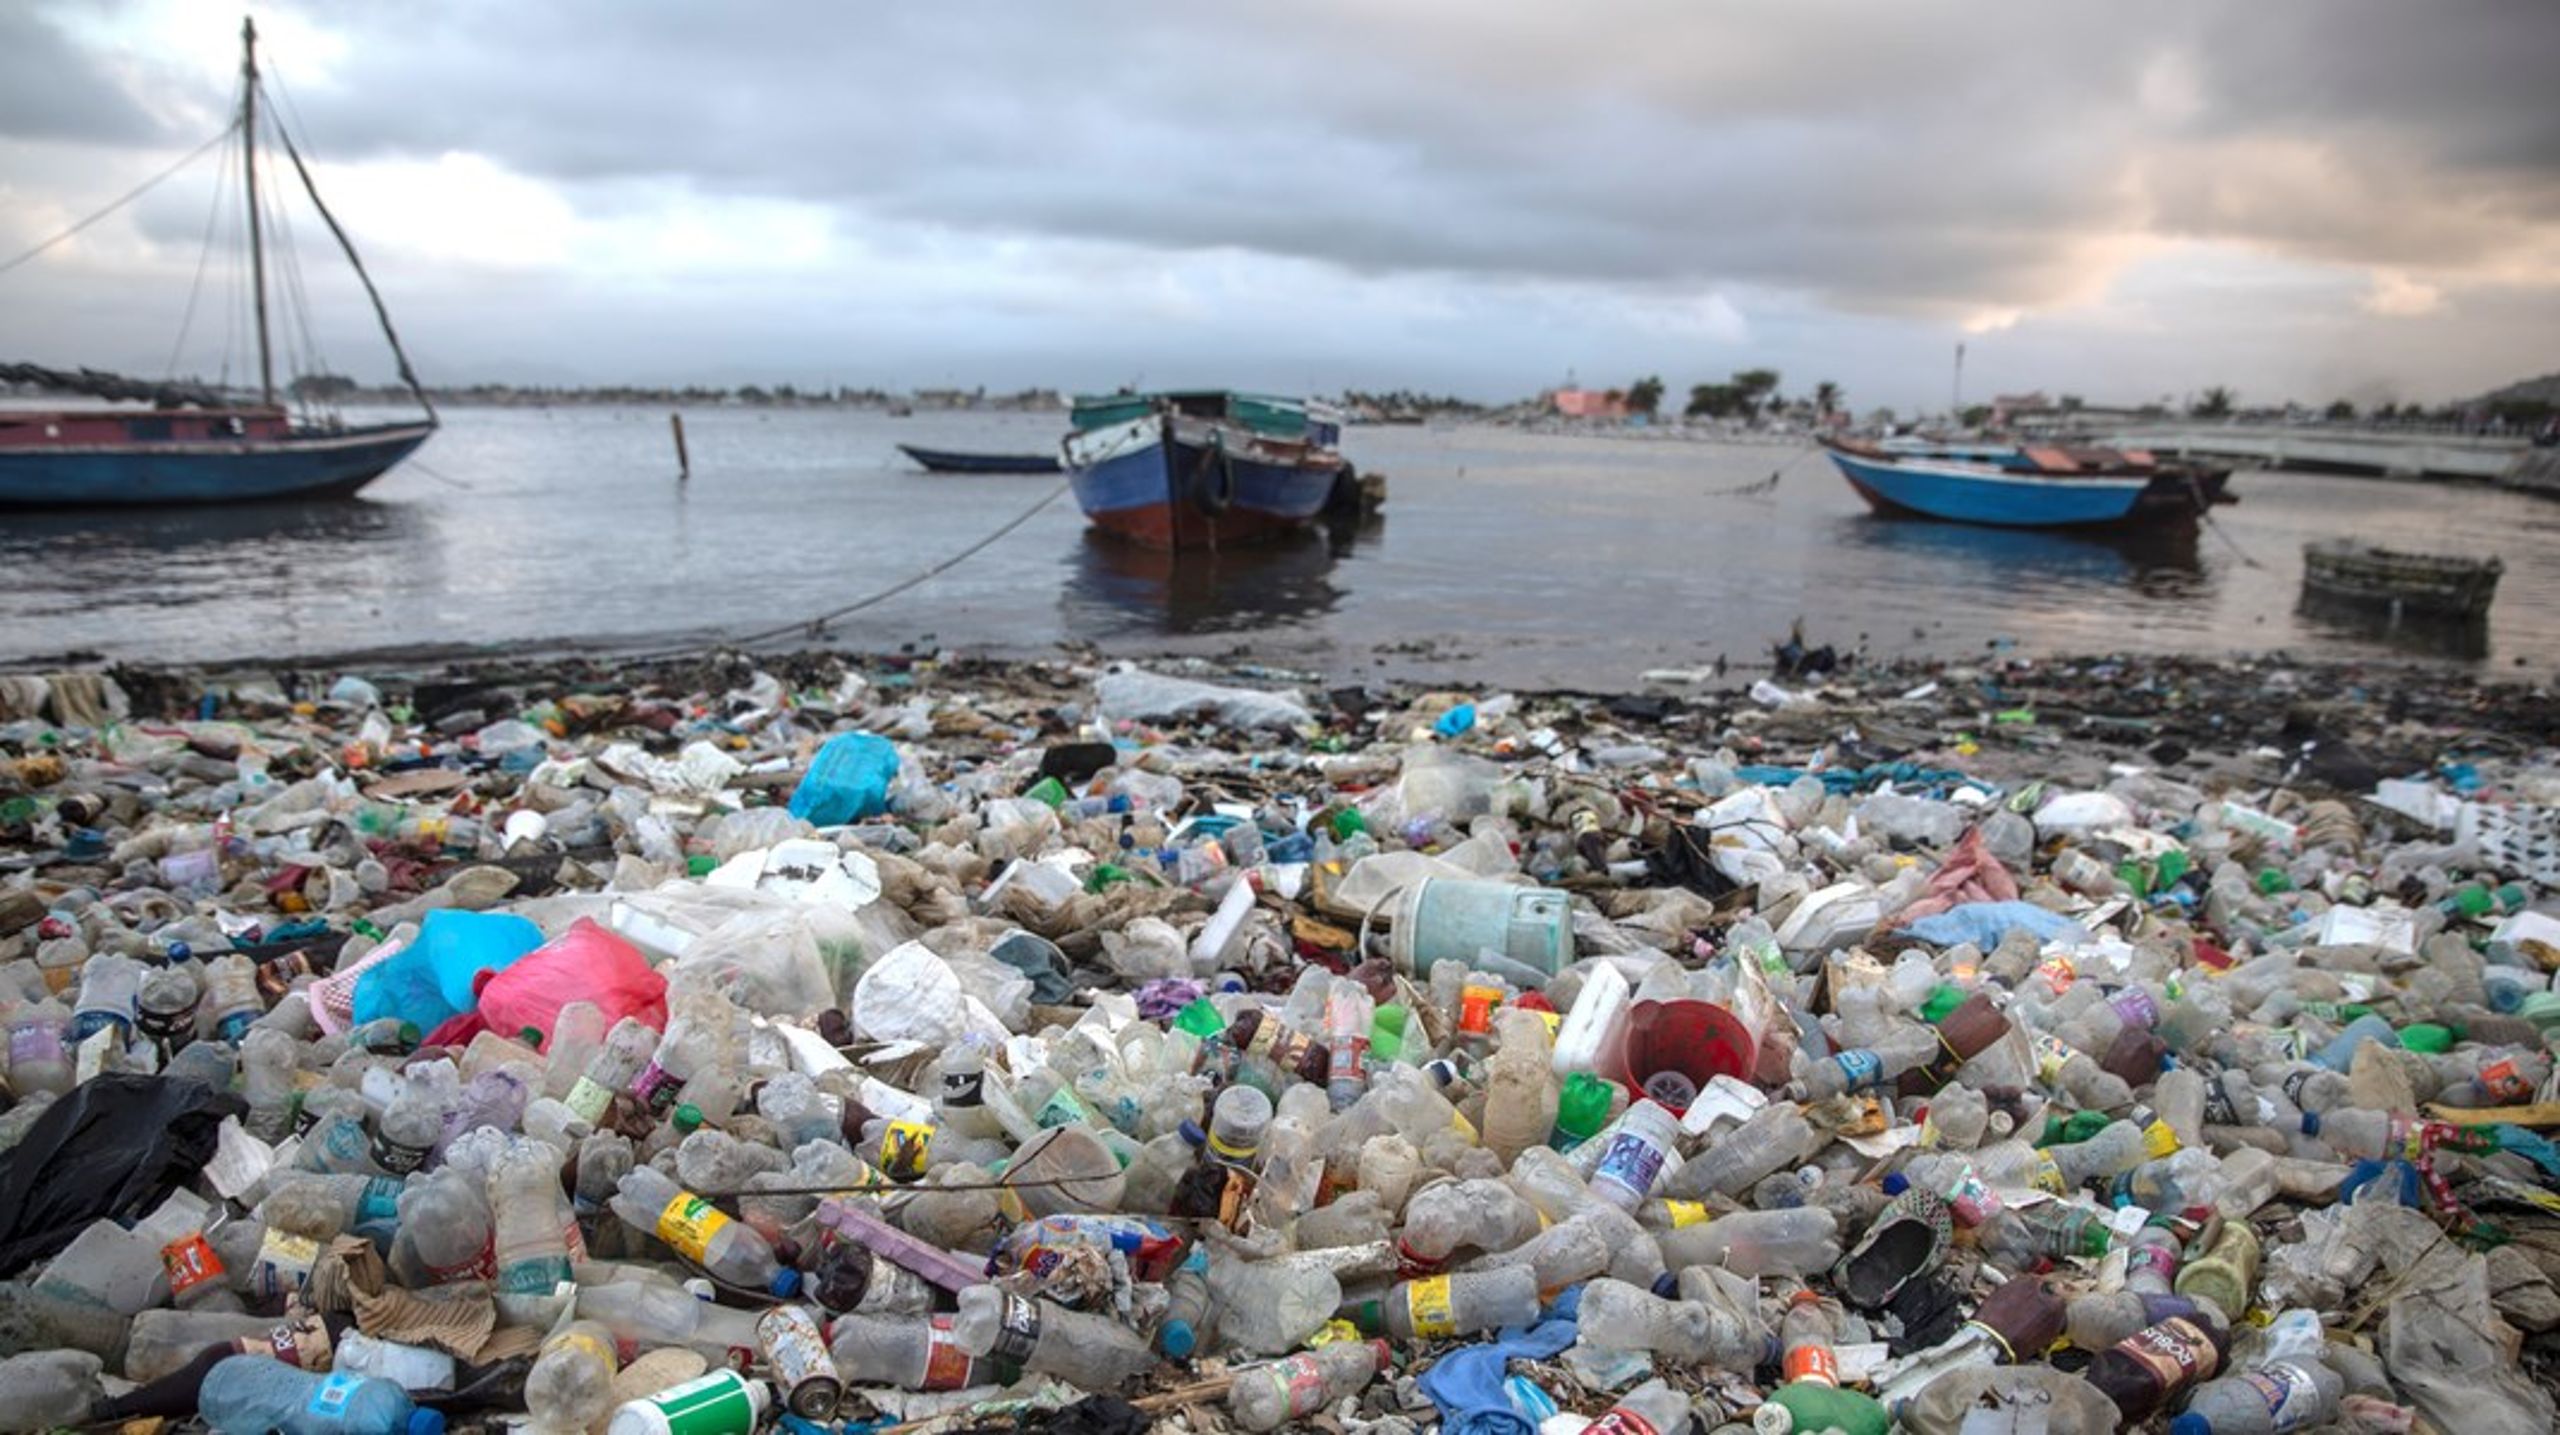 Overforbruk og forsøpling er to av mekanismene som driver menneskene til å overskride planetens tålegrenser, gjennom blant annet klimagassutslipp, forurensning og avskoging.